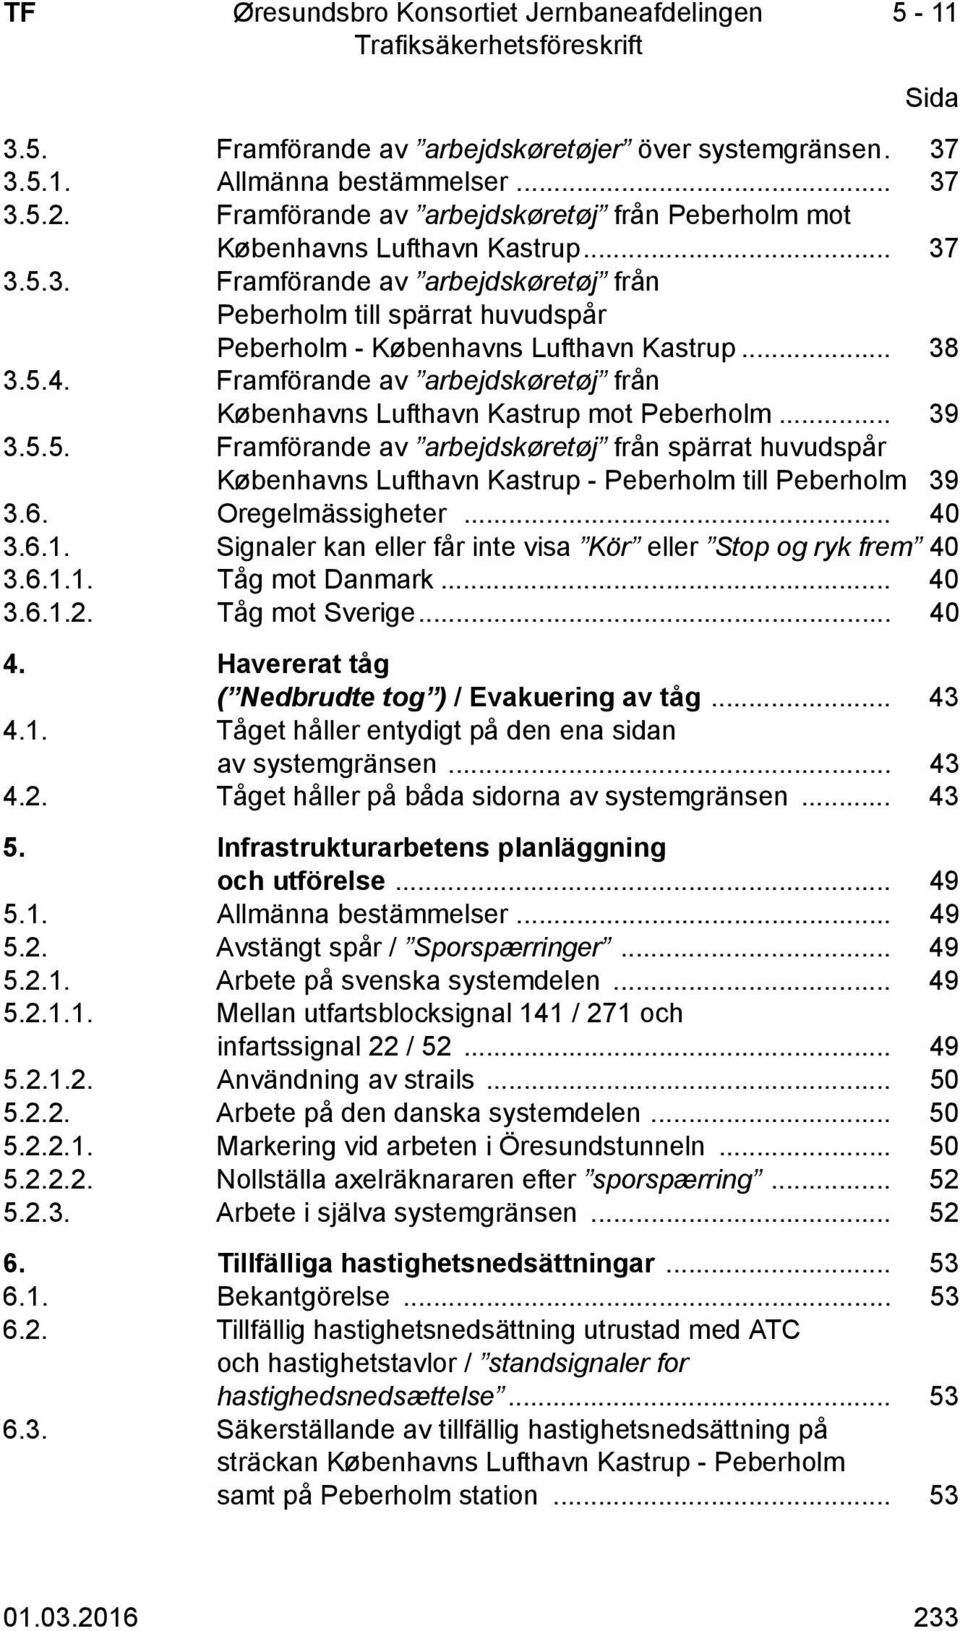 6. Oregelmässigheter... 40 3.6.1. Signaler kan eller får inte visa Kör eller Stop og ryk frem 40 3.6.1.1. Tåg mot Danmark... 40 3.6.1.2. Tåg mot Sverige... 40 4.